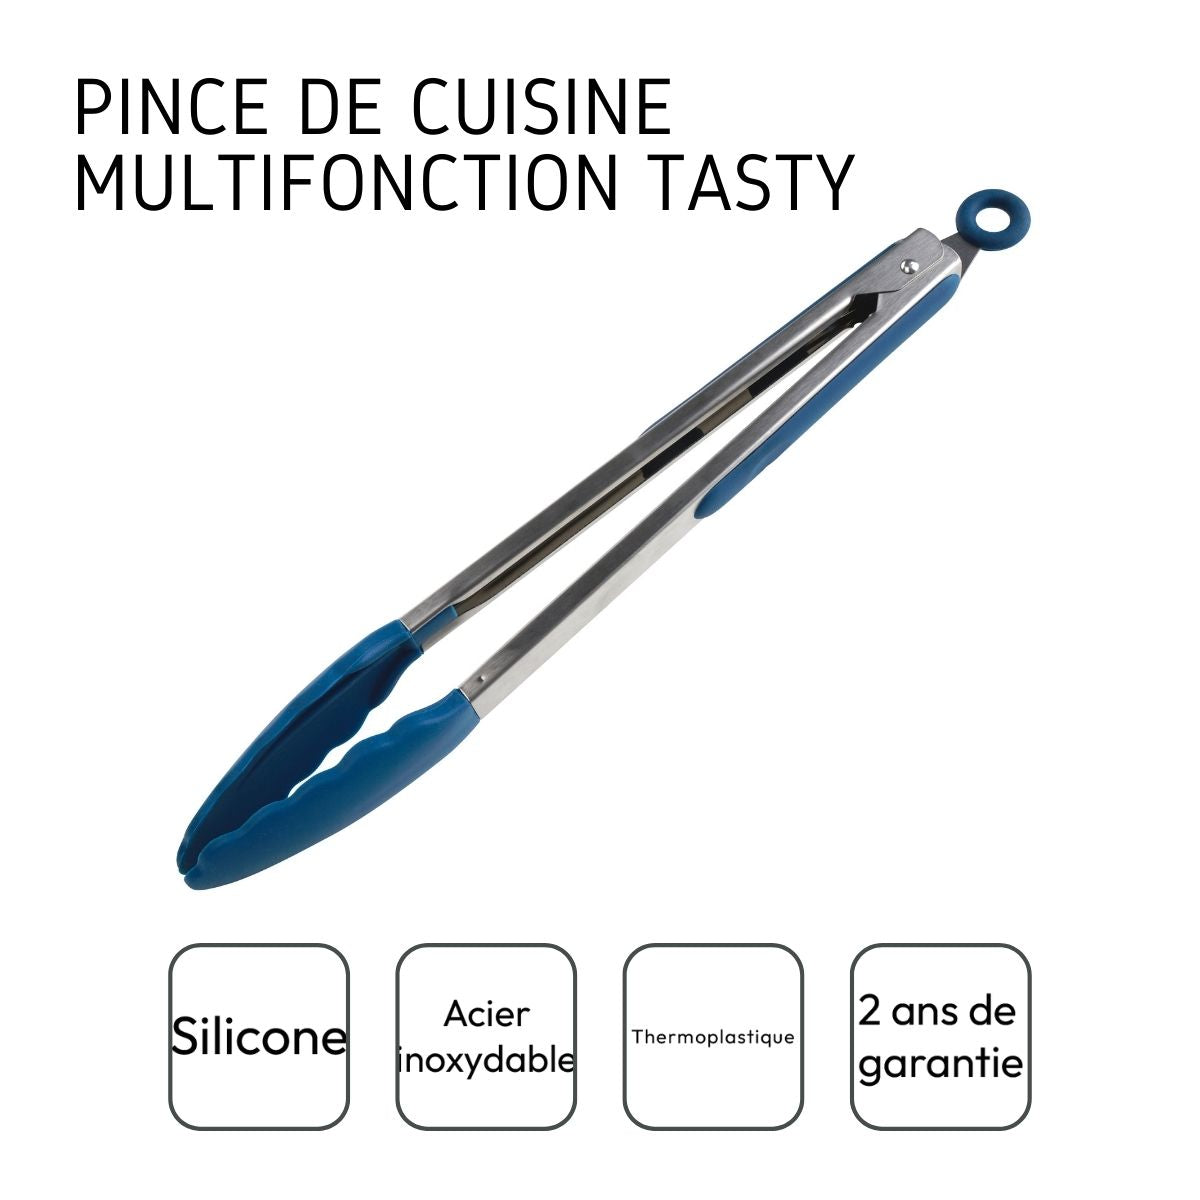 Pince de cuisine multifonction Tasty Core